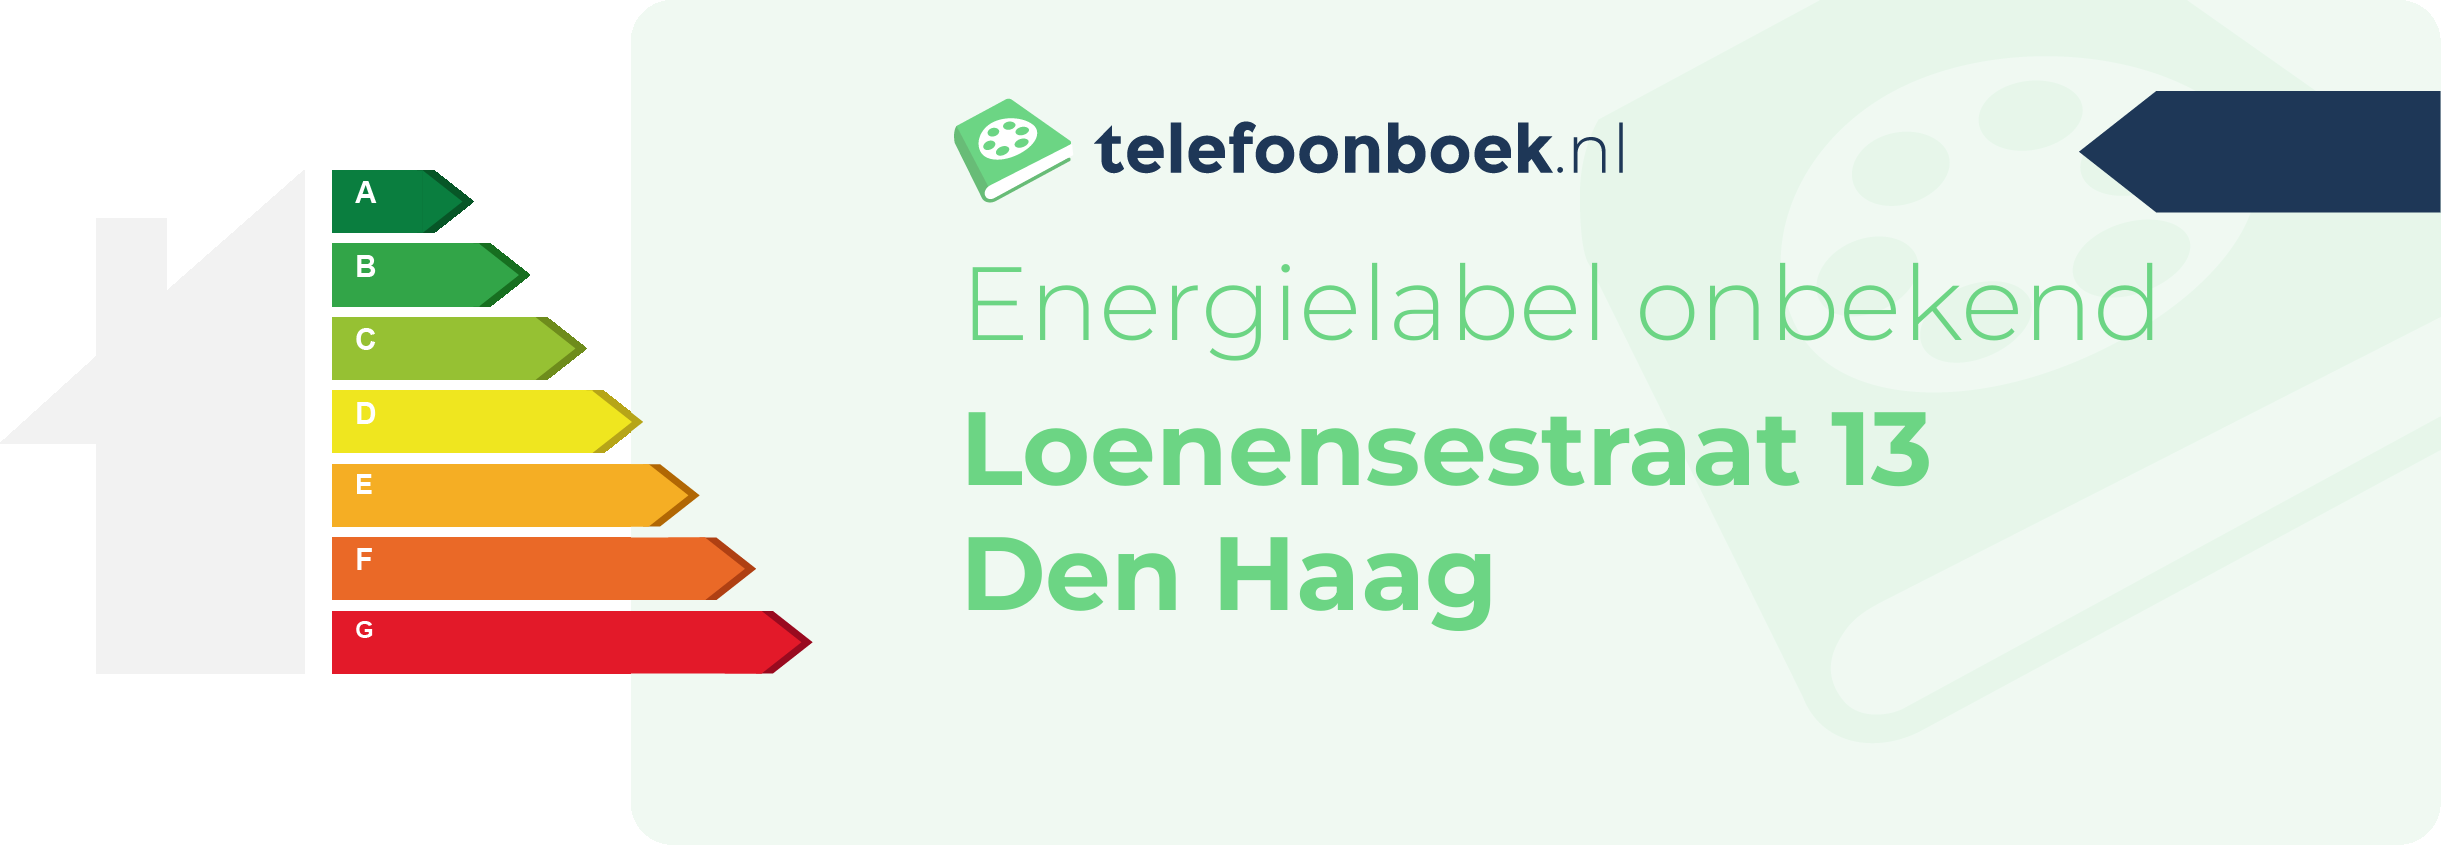 Energielabel Loenensestraat 13 Den Haag